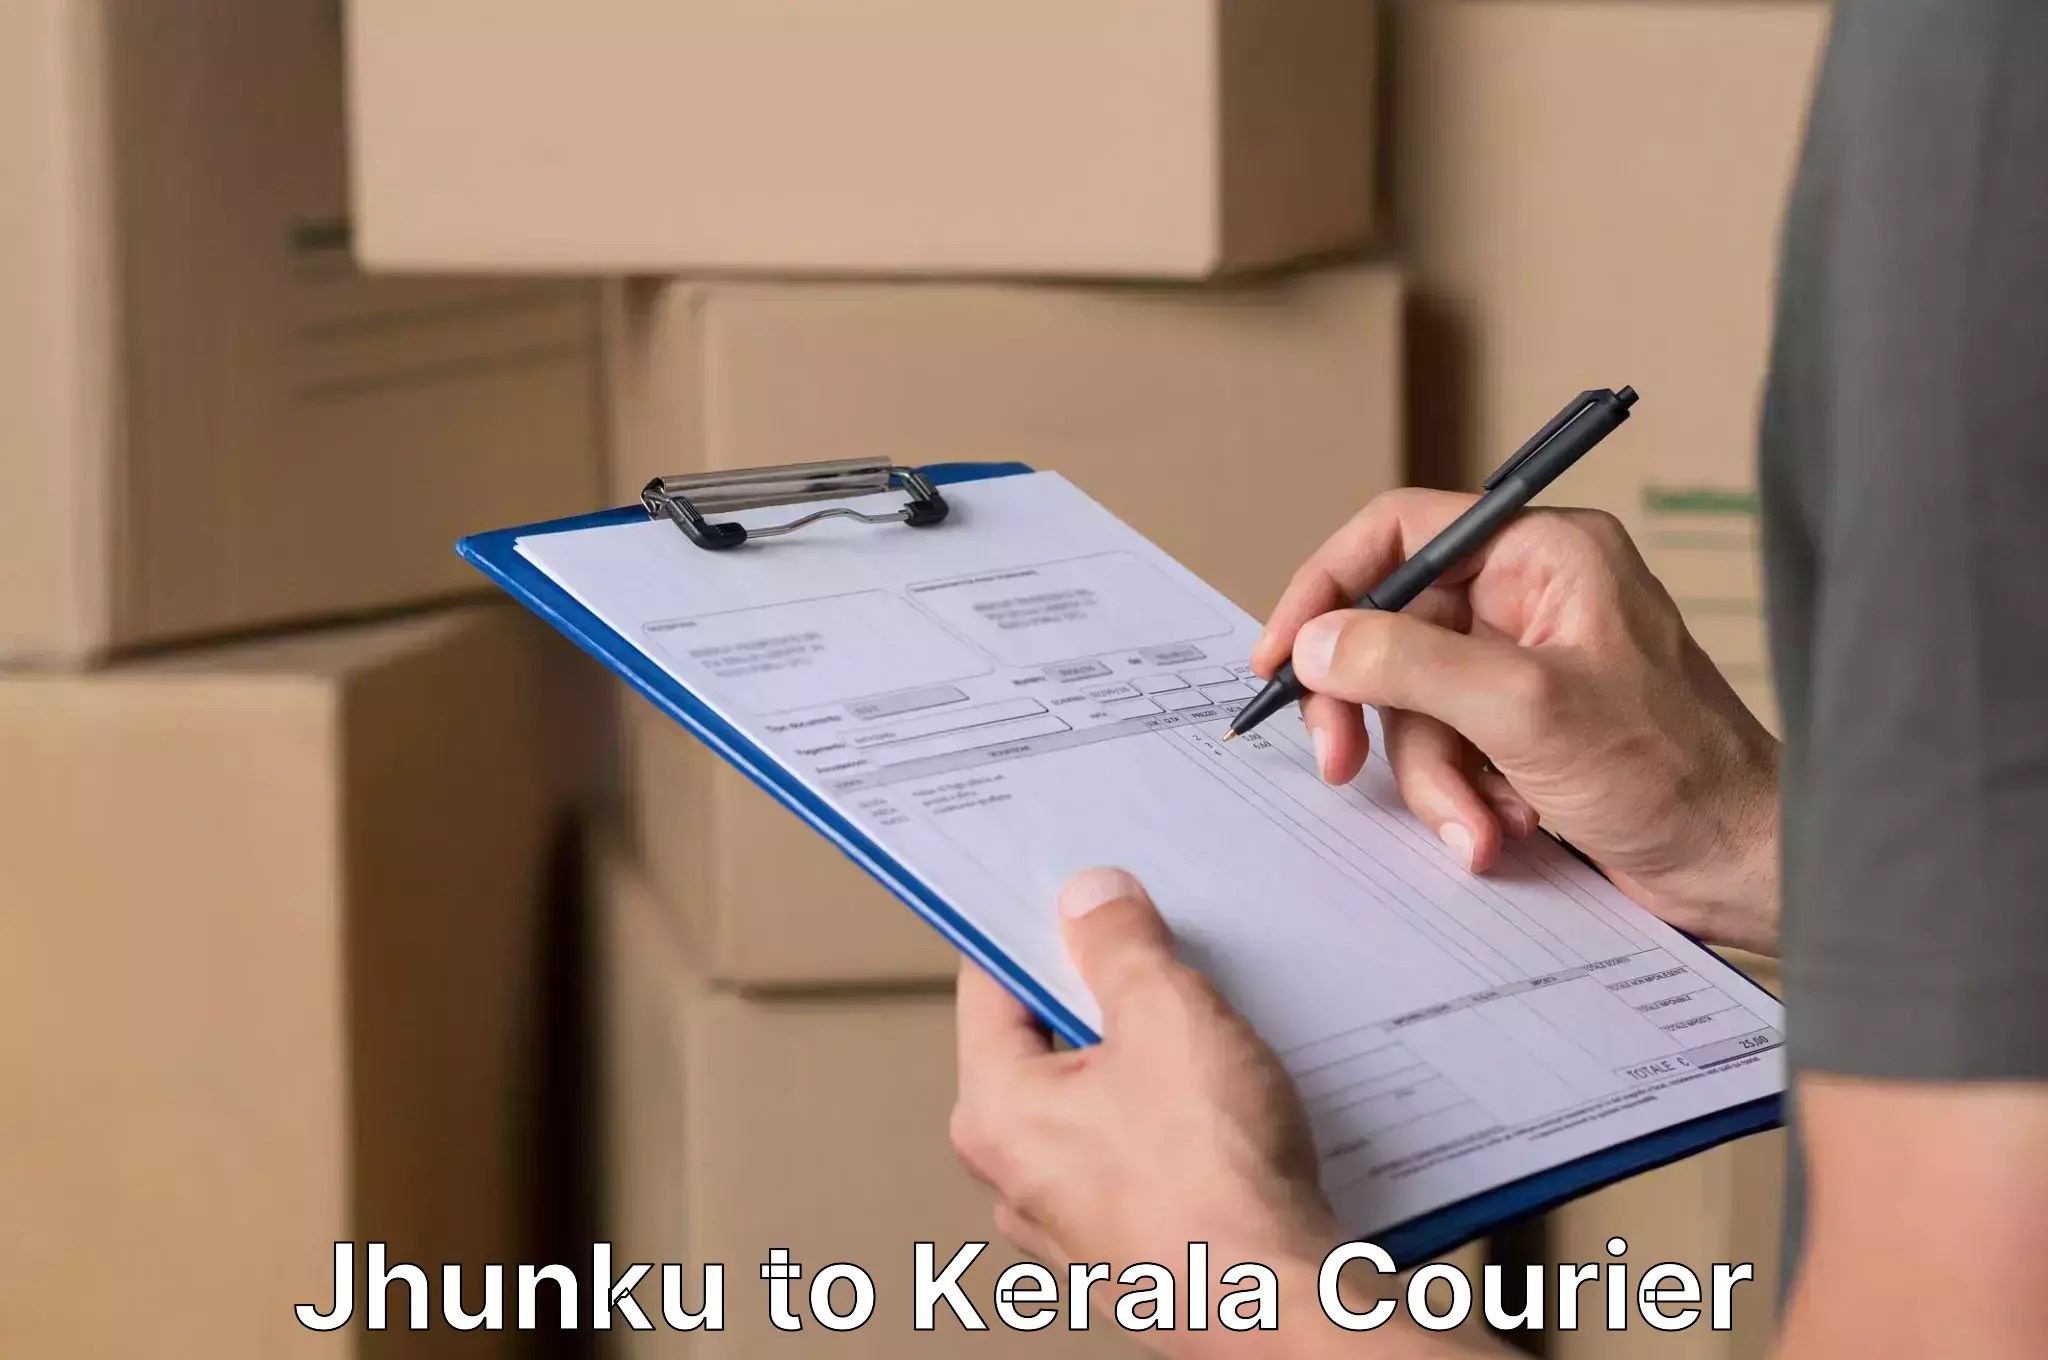 Personalized moving service Jhunku to Kerala